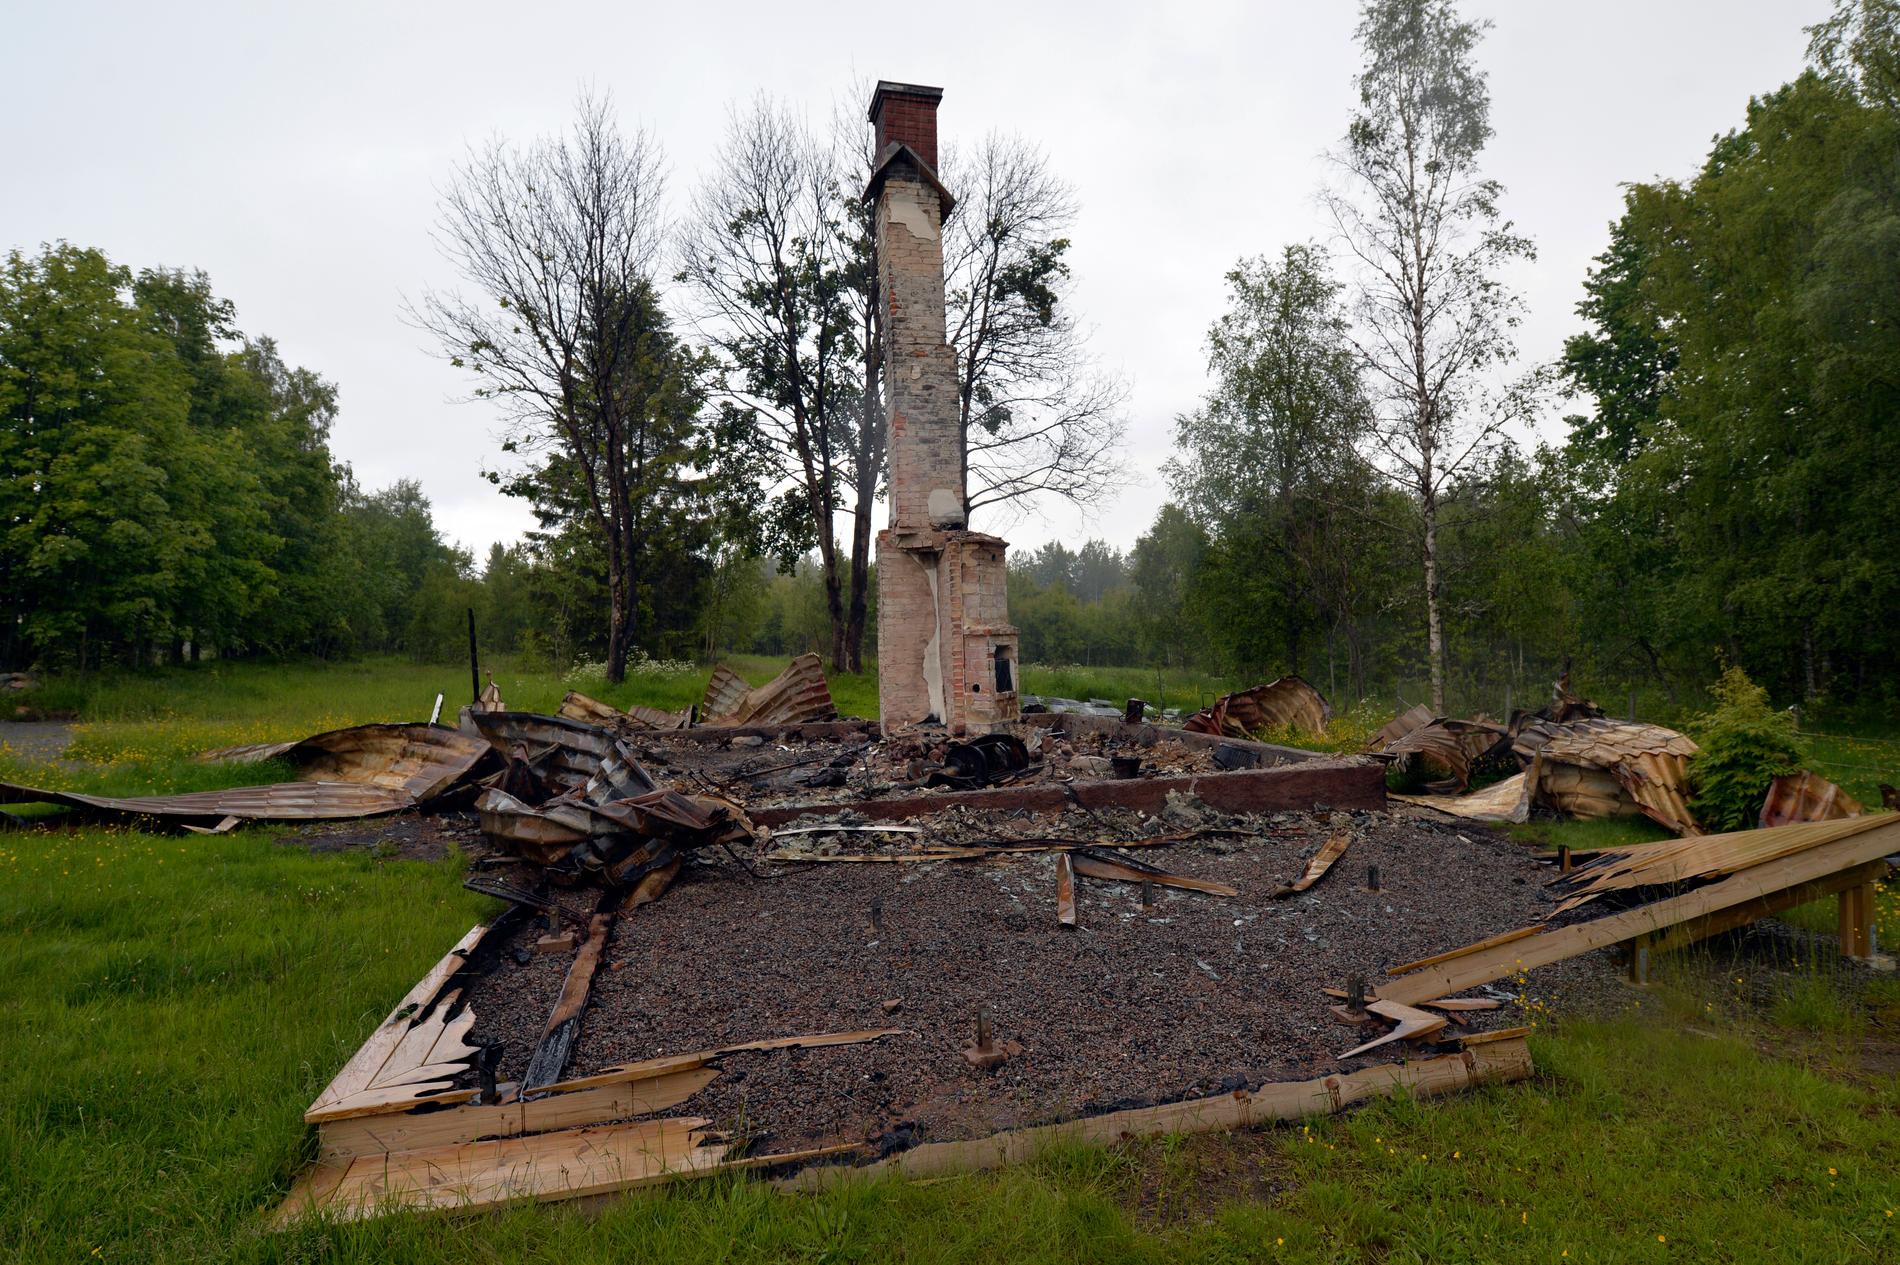 Den utbyggda sommarstugan låg ensligt belägen längst ut på en skogsväg i Hökensås i Tidaholms kommun.
Fastigheten ligger vackert vid en äng som i dag står i full försommarblom.
Men idyllen bryts av en skorstensmur och svartbrända bråten, kastruller, en sönderbränd grill och en rostig diskbänk. Här dog ett par i 70-årsåldern.
Branden upptäcktes troligen först efter en dag - den 10 mars 2015 - av en man som tittade till sina ägor i närheten av sommarstugan.